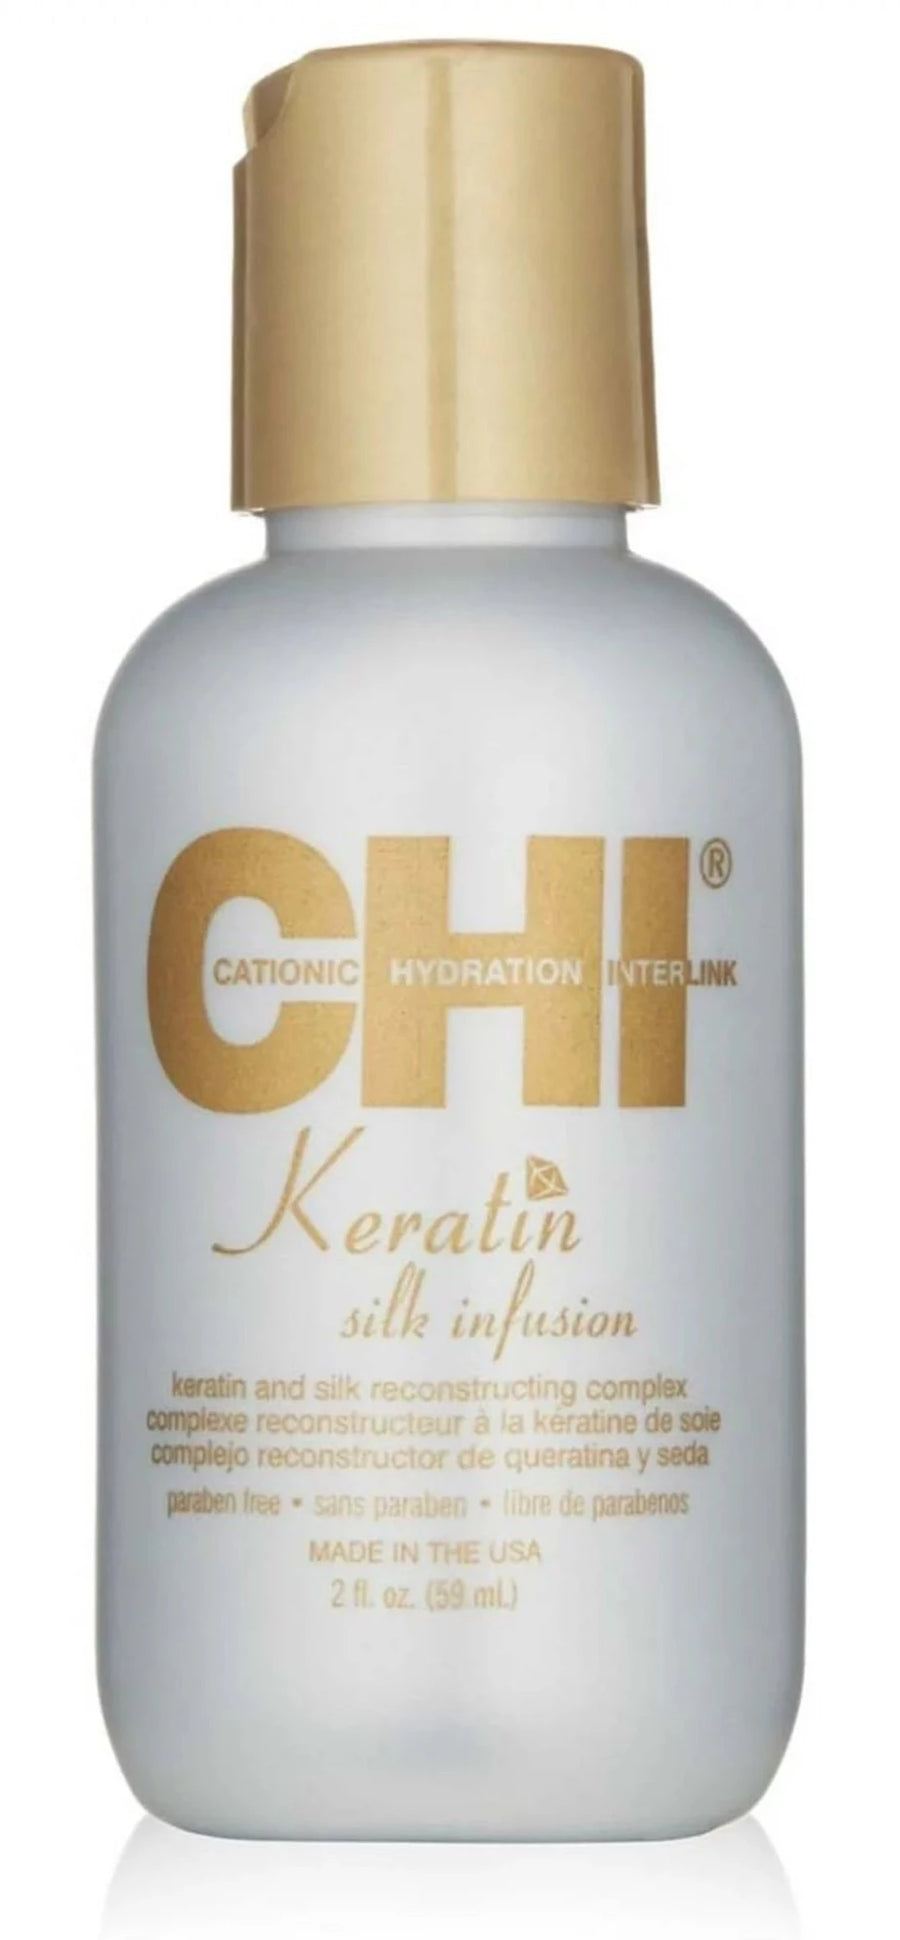 CHI Keratin Silk Infusion image of 2 oz bottle